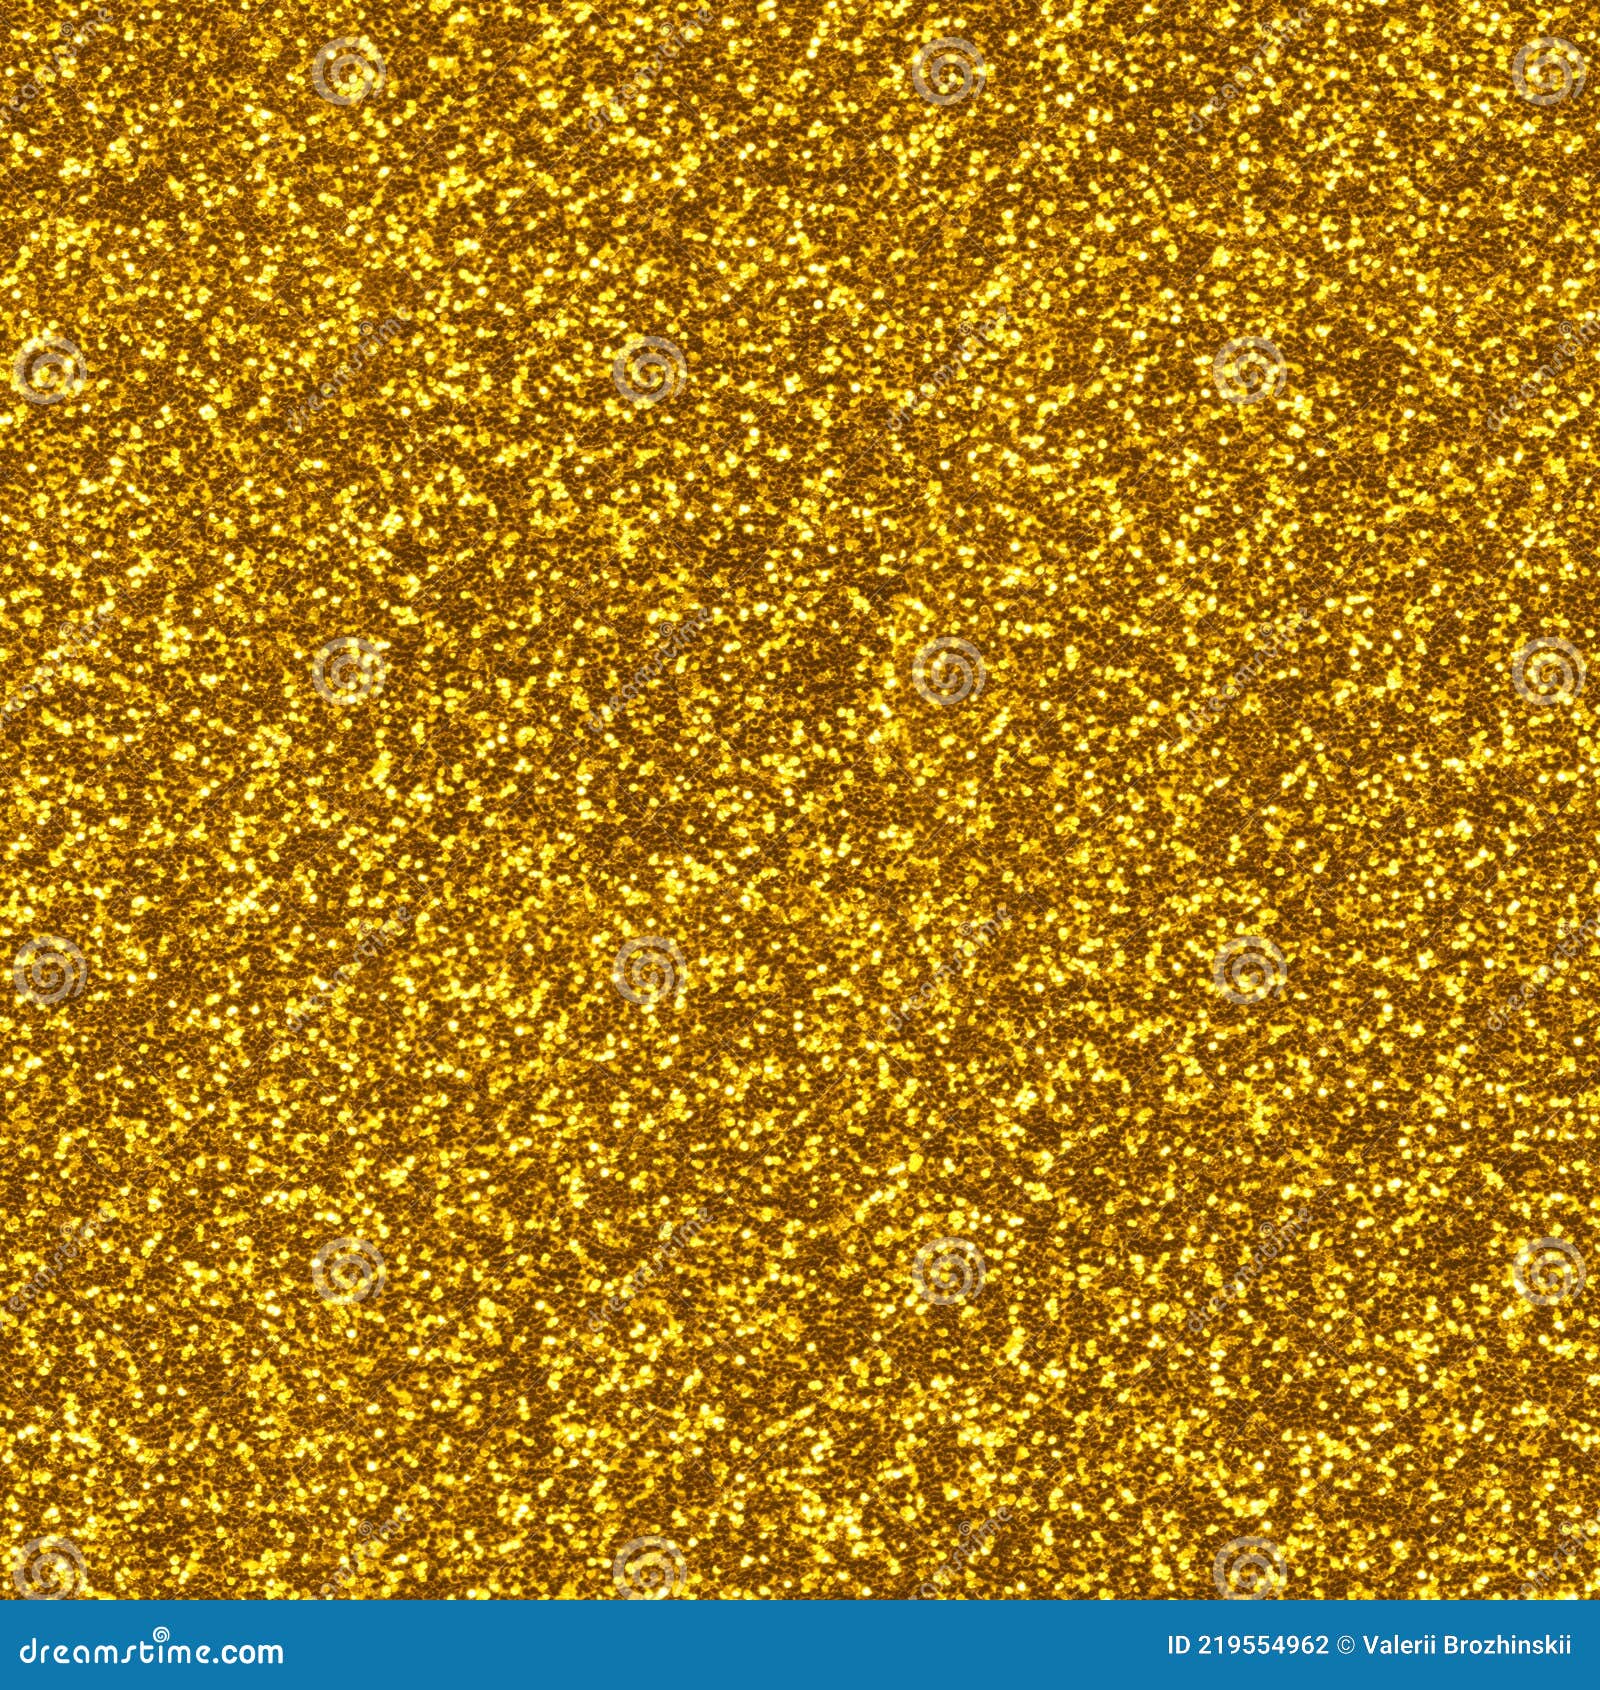 8867 imágenes de Glitter dorado  Imágenes fotos y vectores de stock   Shutterstock